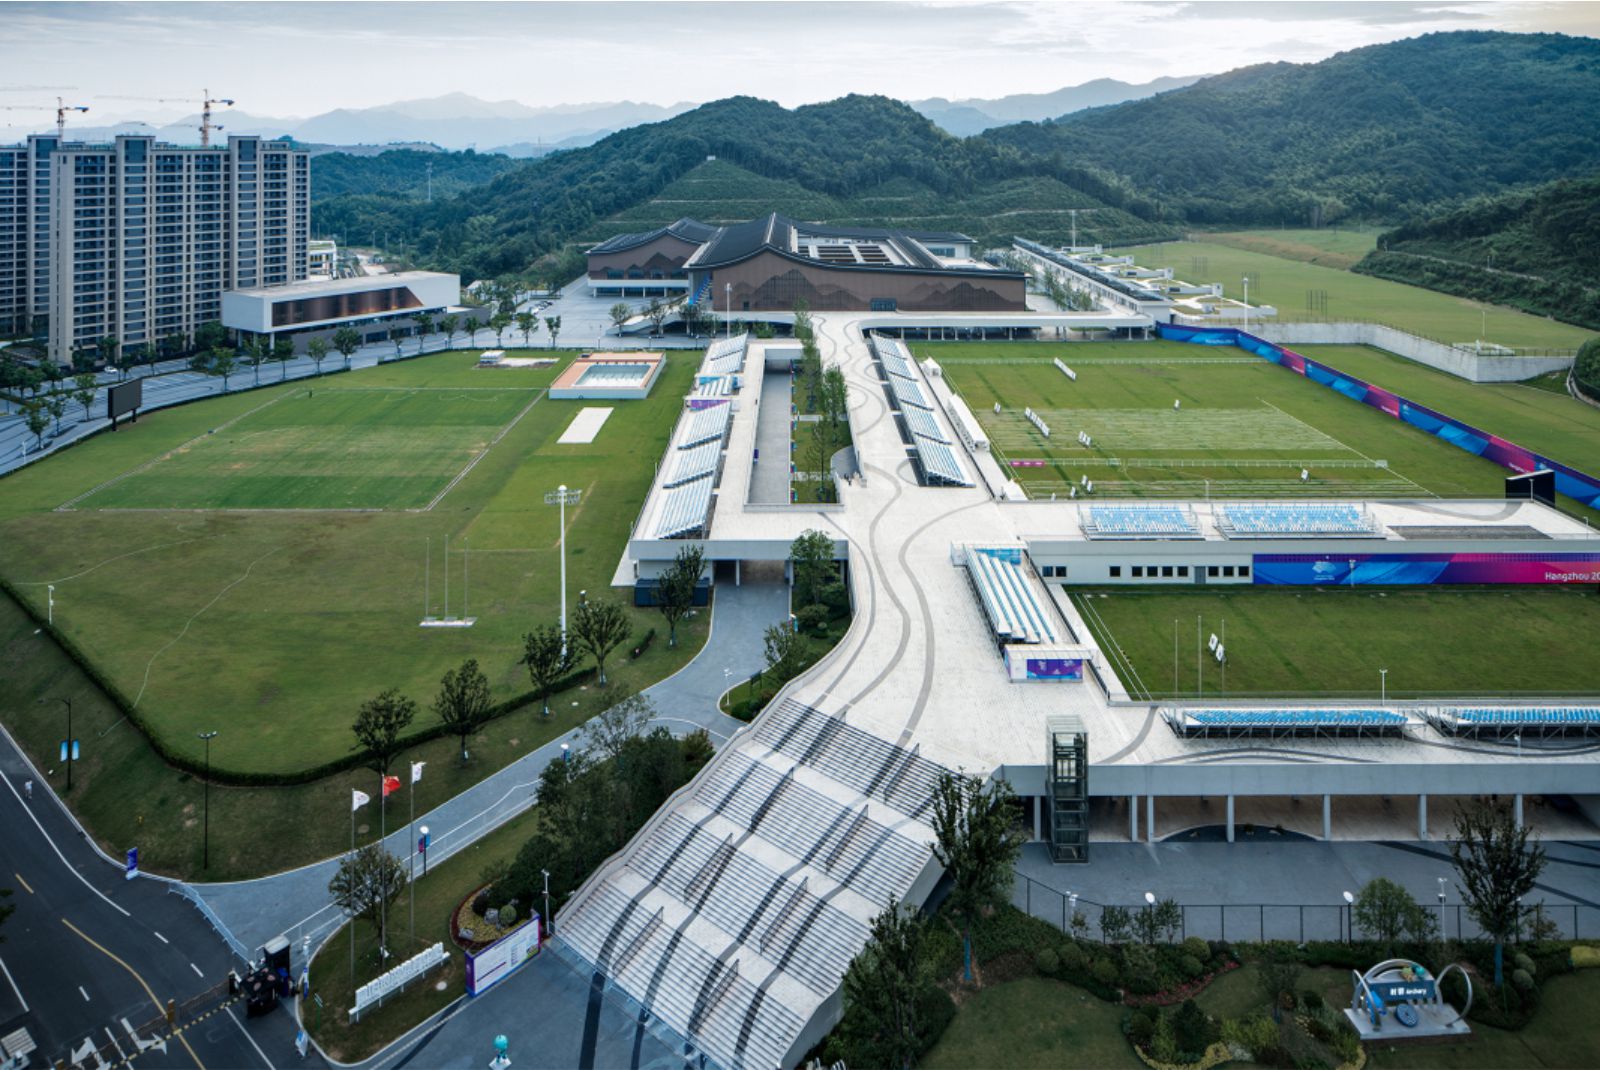 Fuyang Yinhu Sports Center